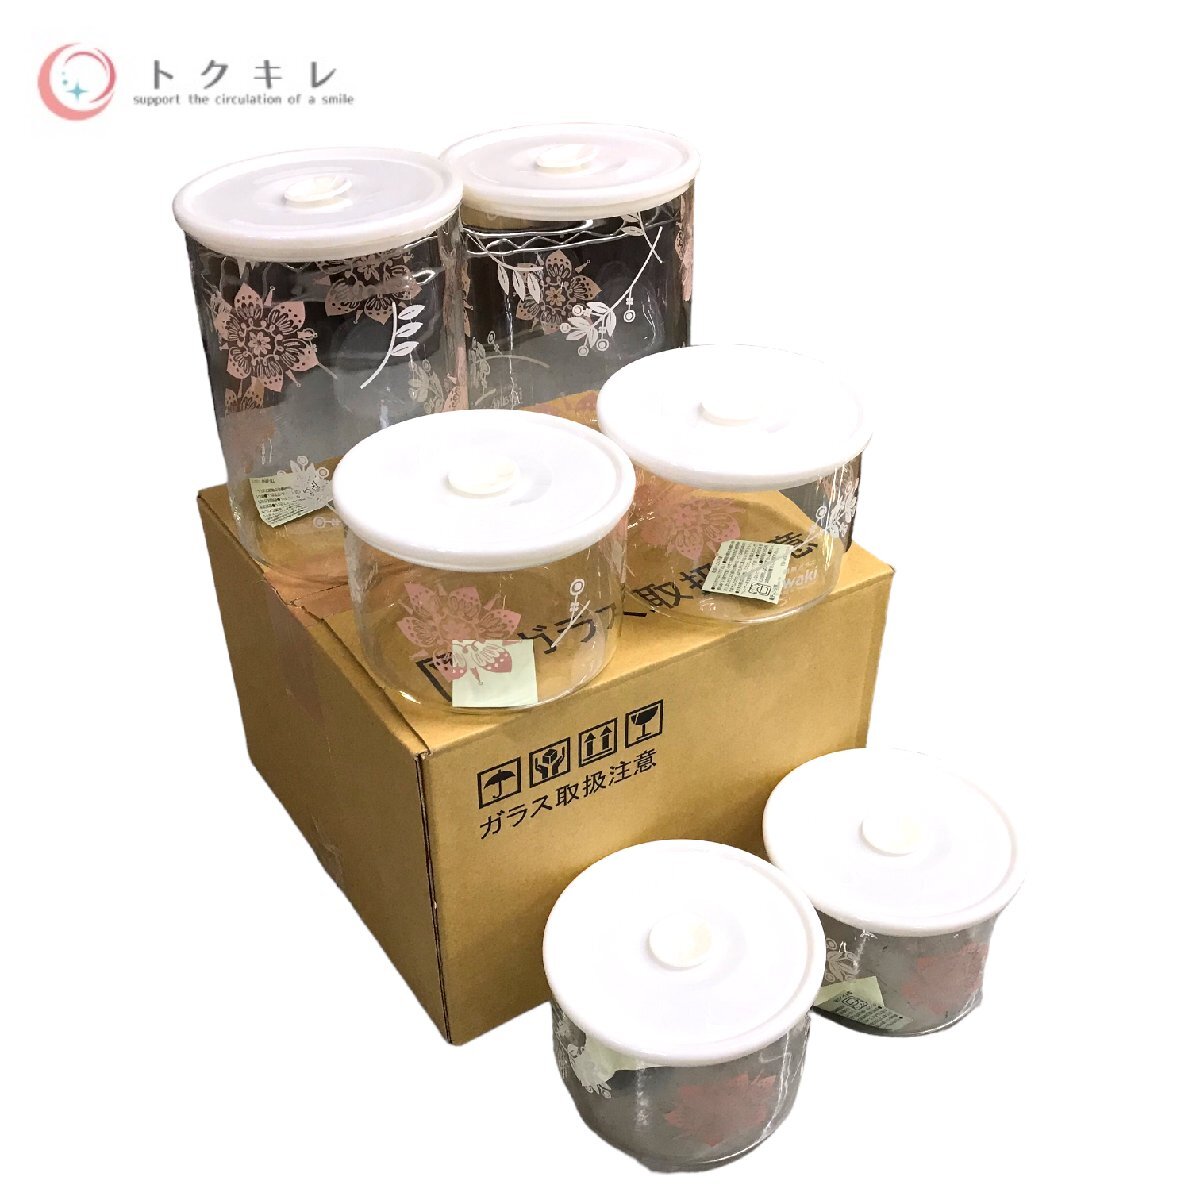 !1 иен старт бесплатная доставка товары для кухни кухонная утварь много 4 позиций комплект iwaki (i подмышка )ma year гарантия ..la* кухонная утварь SC57M-2MBRD перепродажа .